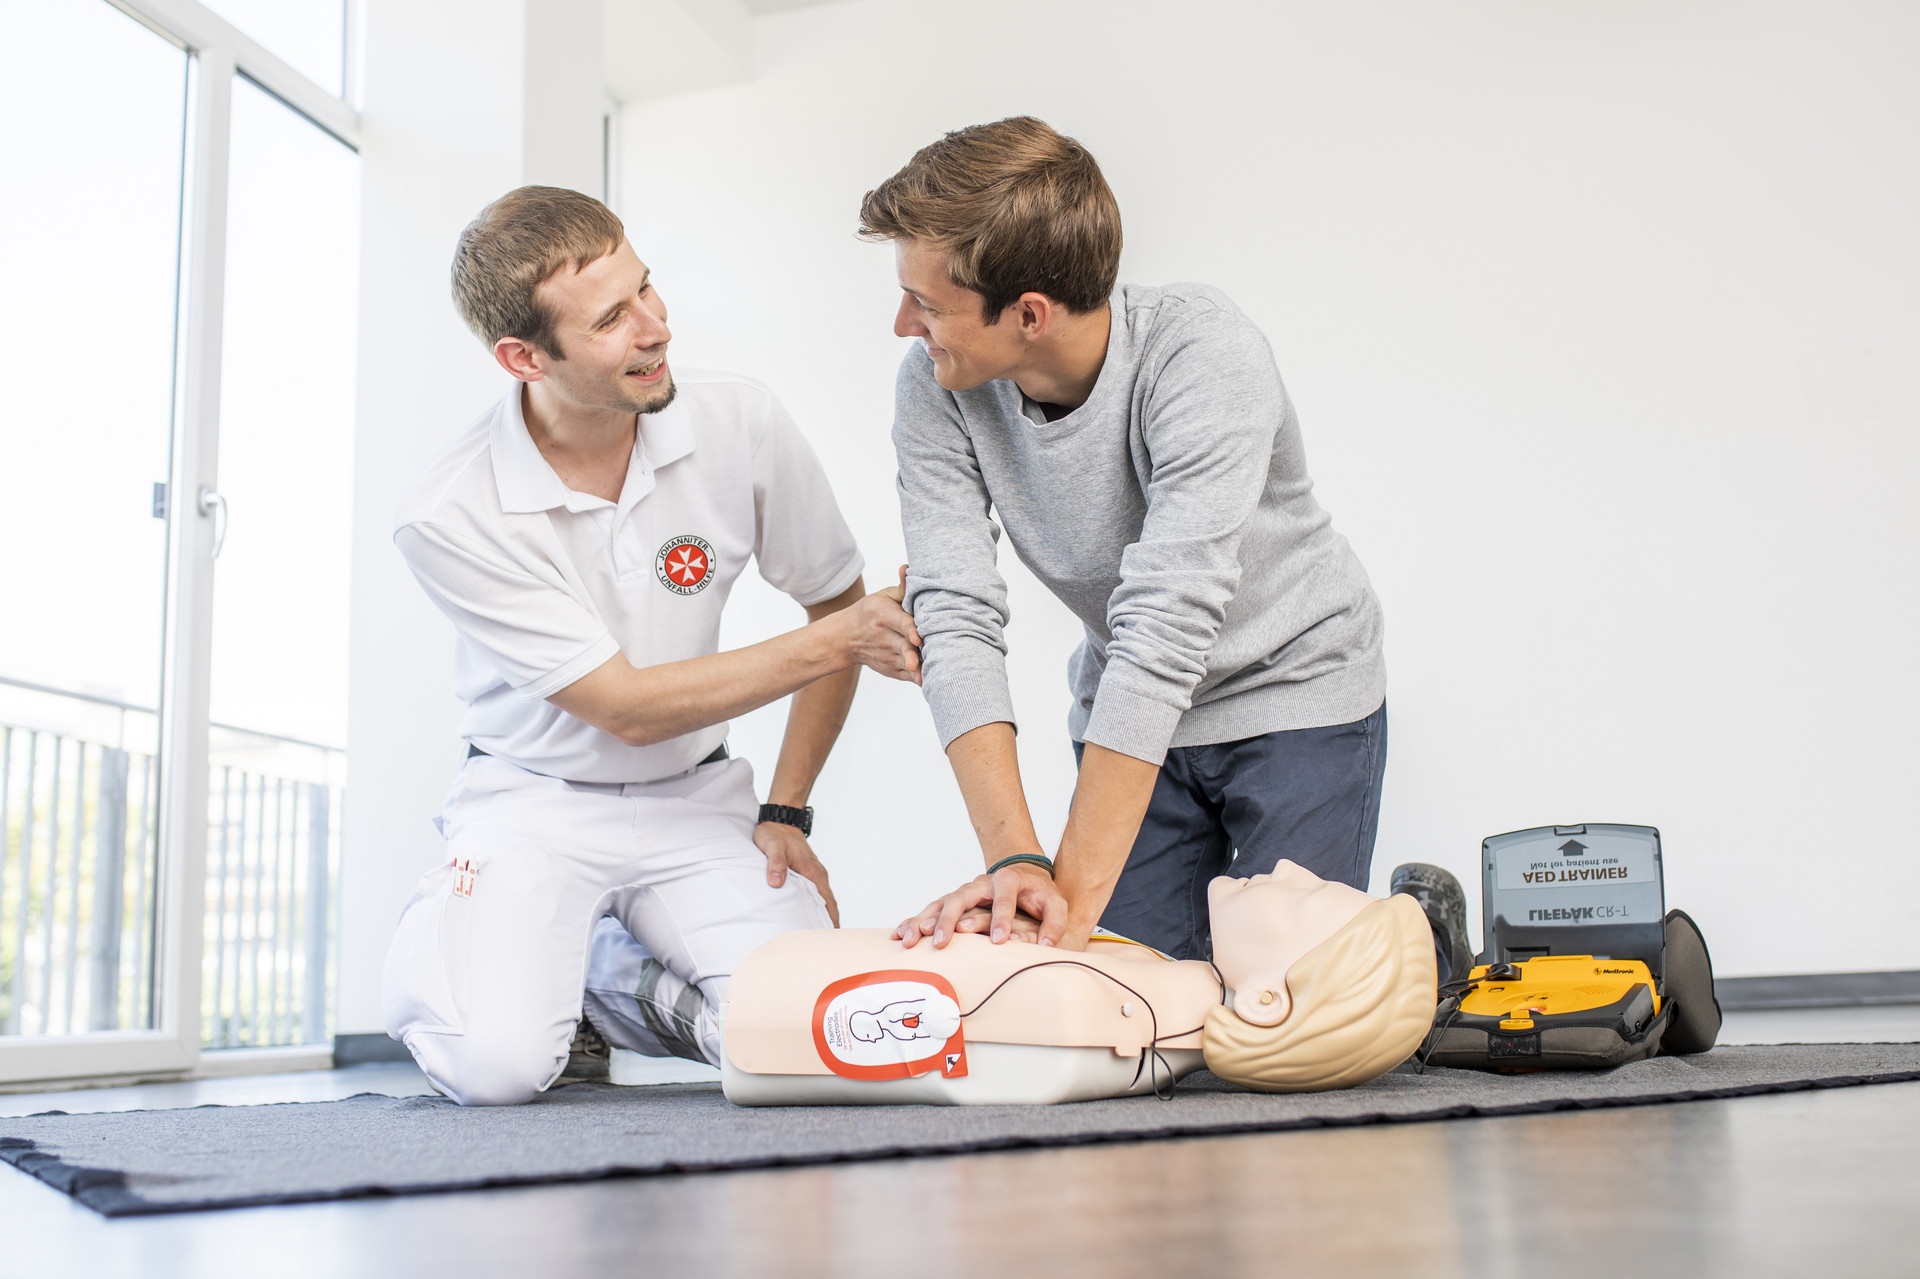 Ein Mann übt unter Anleitung des Kursleiters die Wiederbelebung mit Defibrillator an einer Puppe.